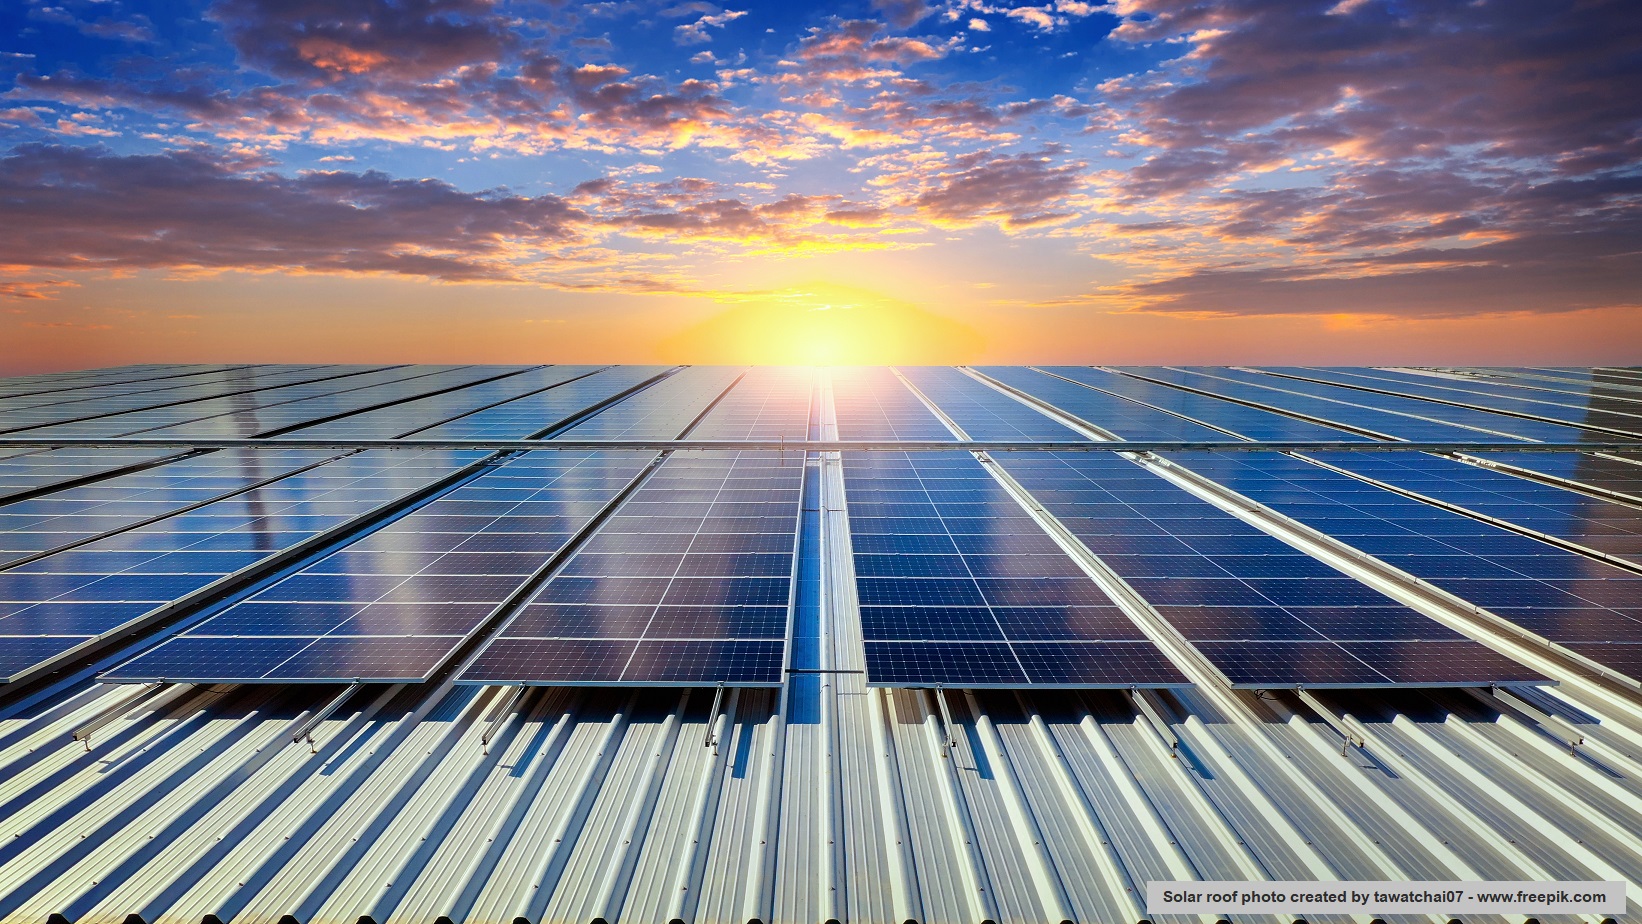 ก.พลังงานดับฝัน Net Metering ติด Solar Rooftop หักลบค่าไฟฟ้าเดือนถัดไปไม่ได้ 